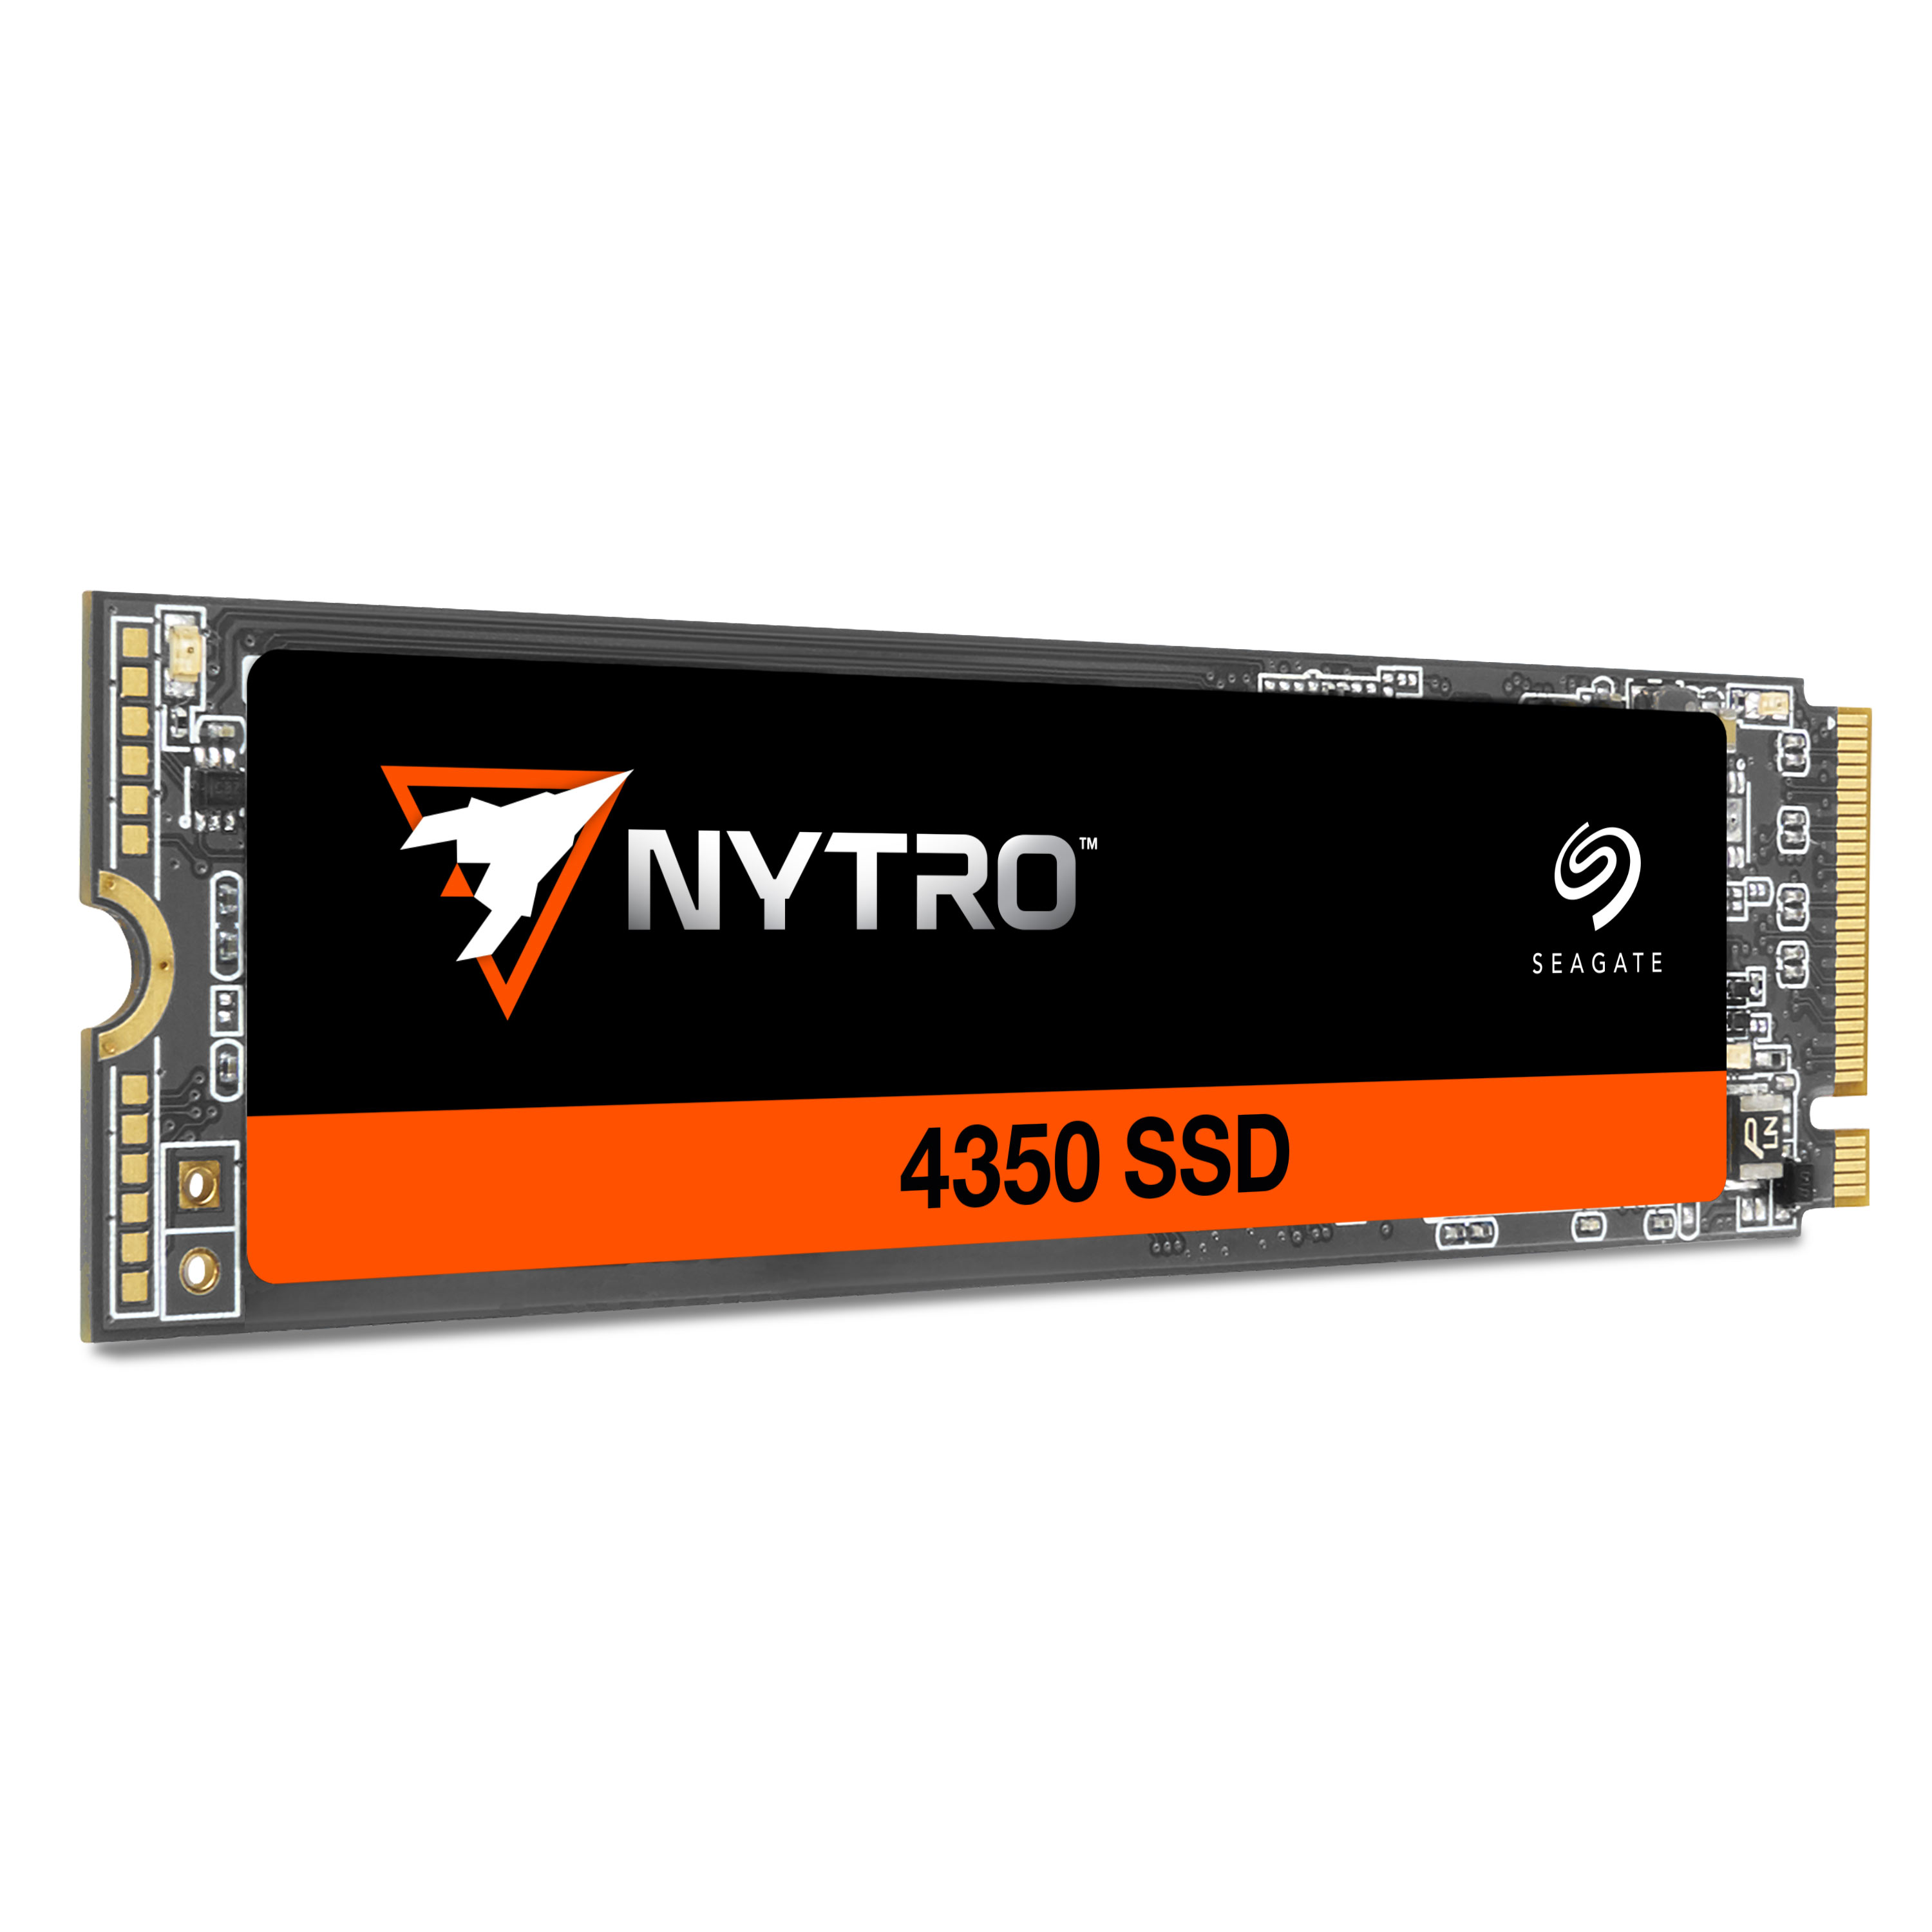 Immagine pubblicata in relazione al seguente contenuto: Seagate lancia la linea di SSD NVMe PCIe Gen 4 M.2 Nytro 4350 per i data center | Nome immagine: news35036_Seagate_SSD-NVMe-Nytro-4350_1.jpg